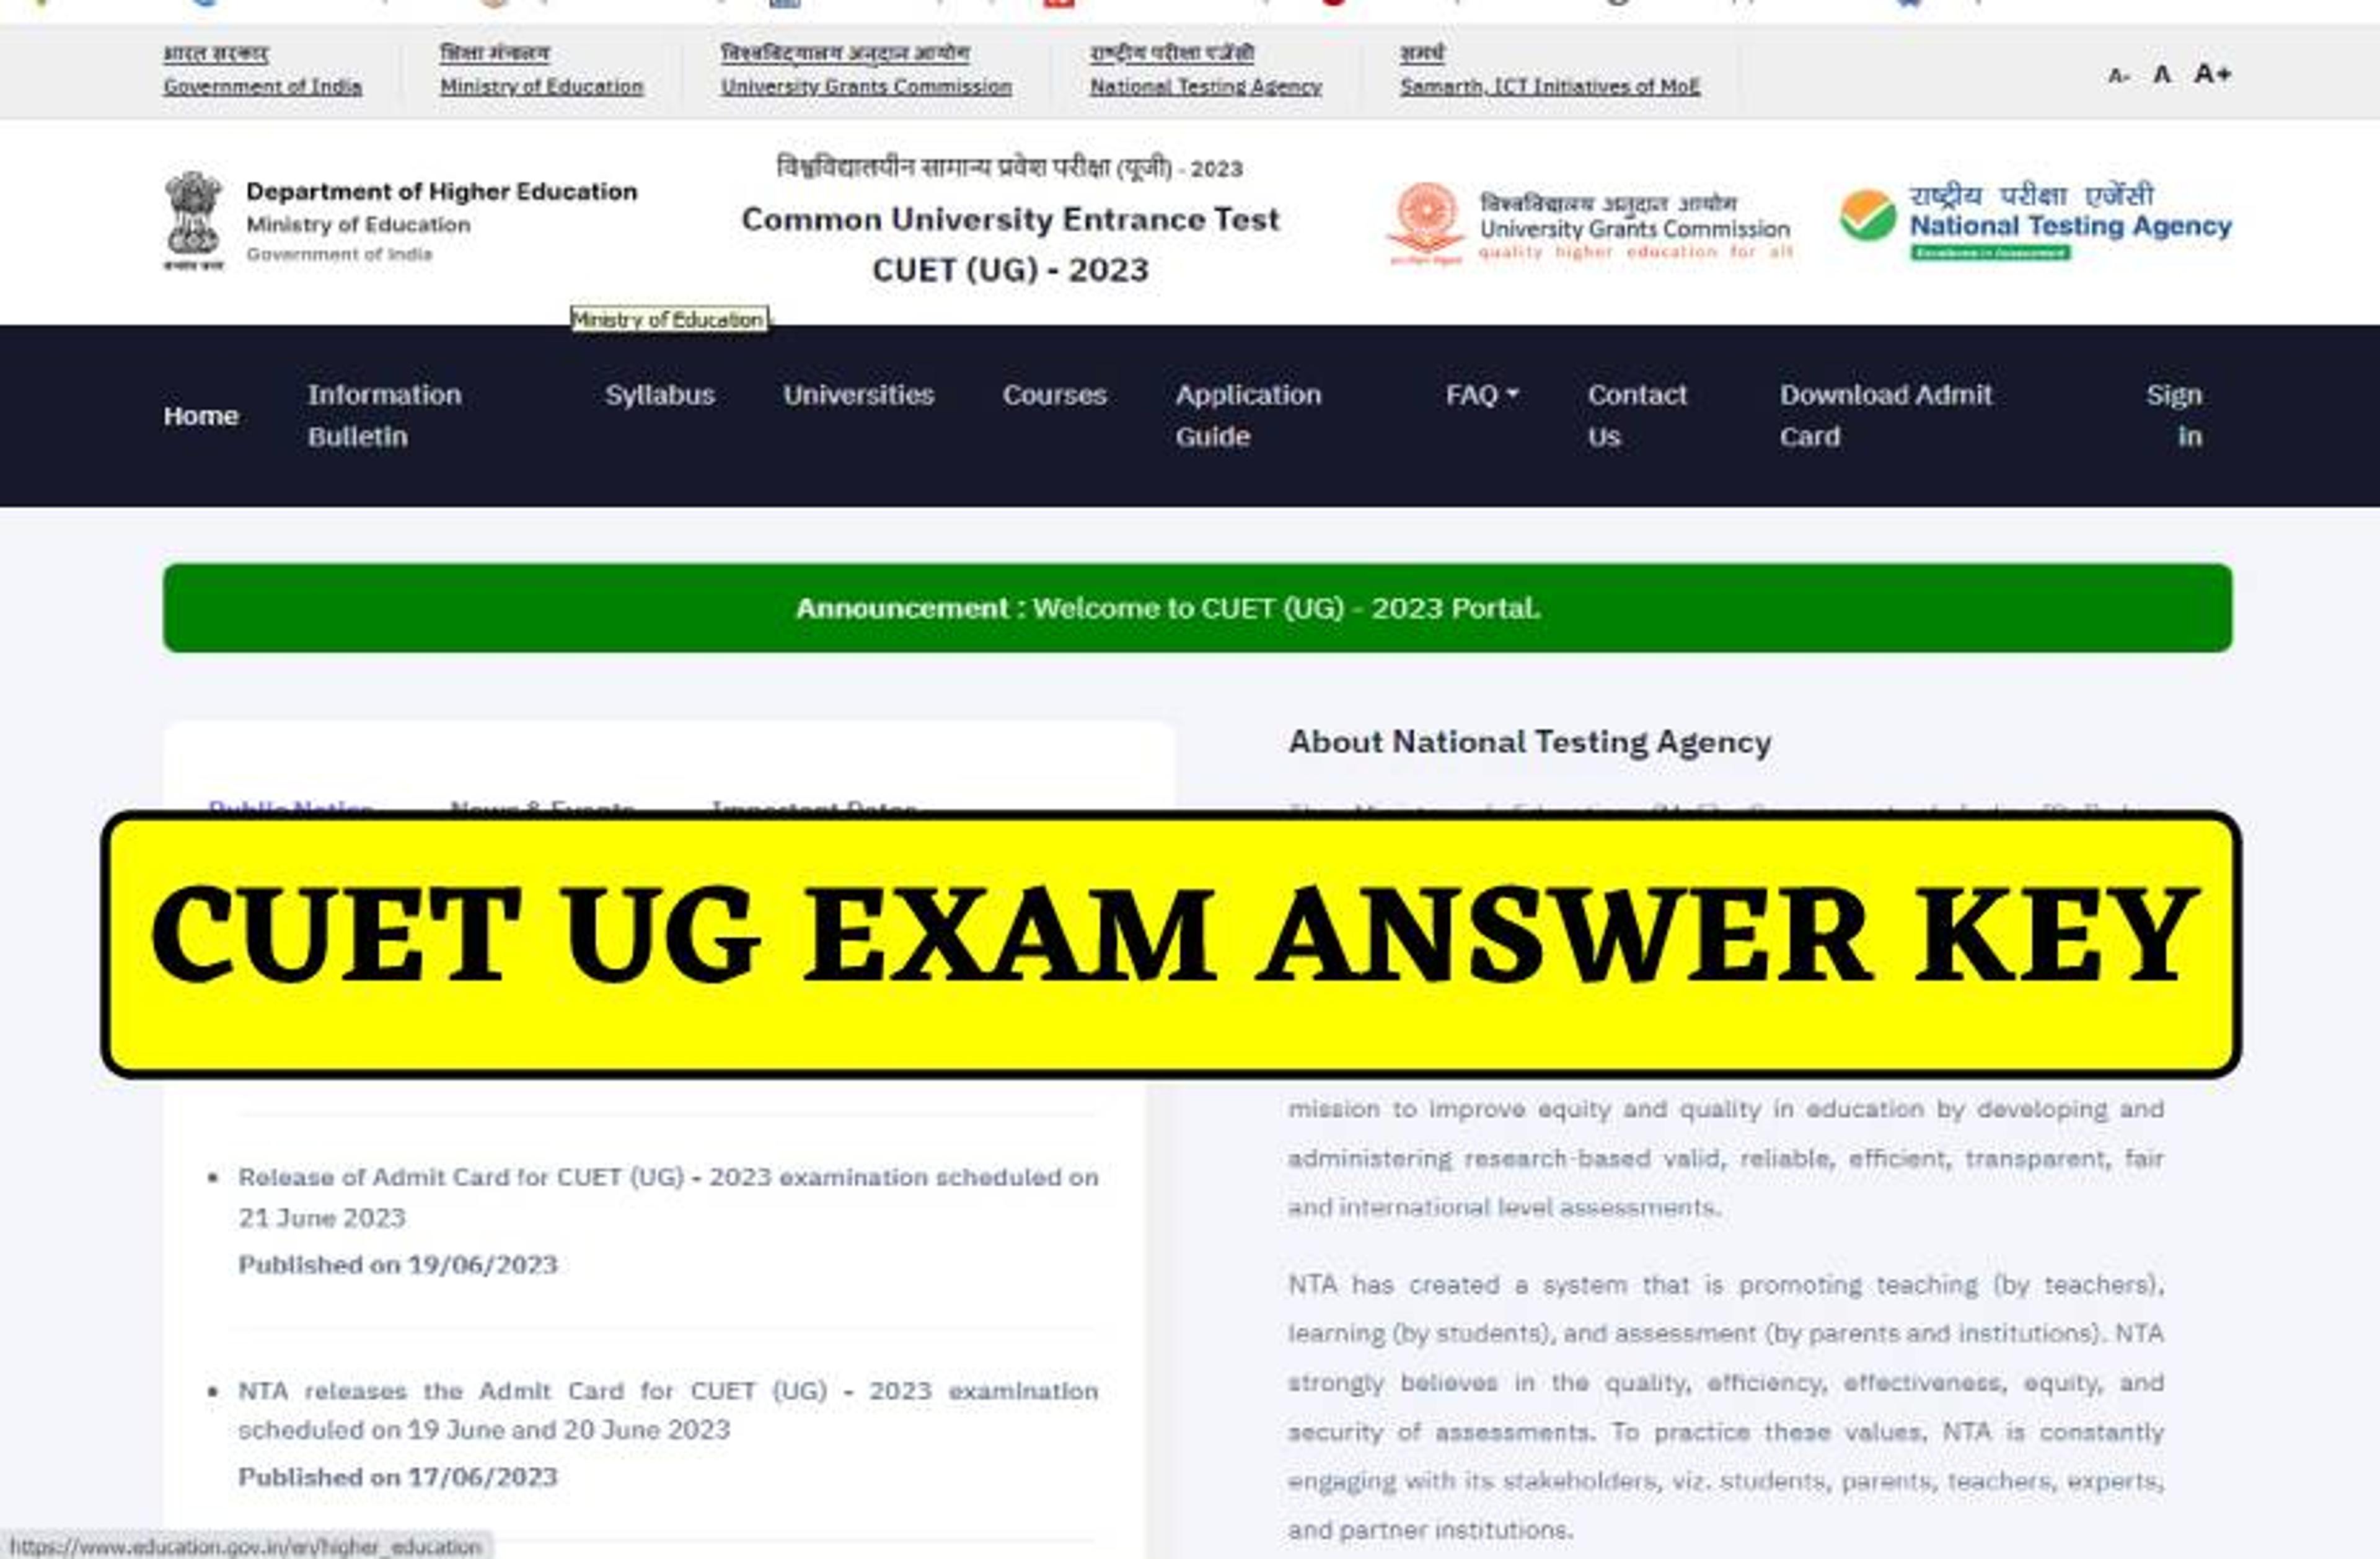 NTA ने जारी की CUET UG EXAM की ANSWER KEY की, 30 जून तक कर सकते आपत्ति दर्ज